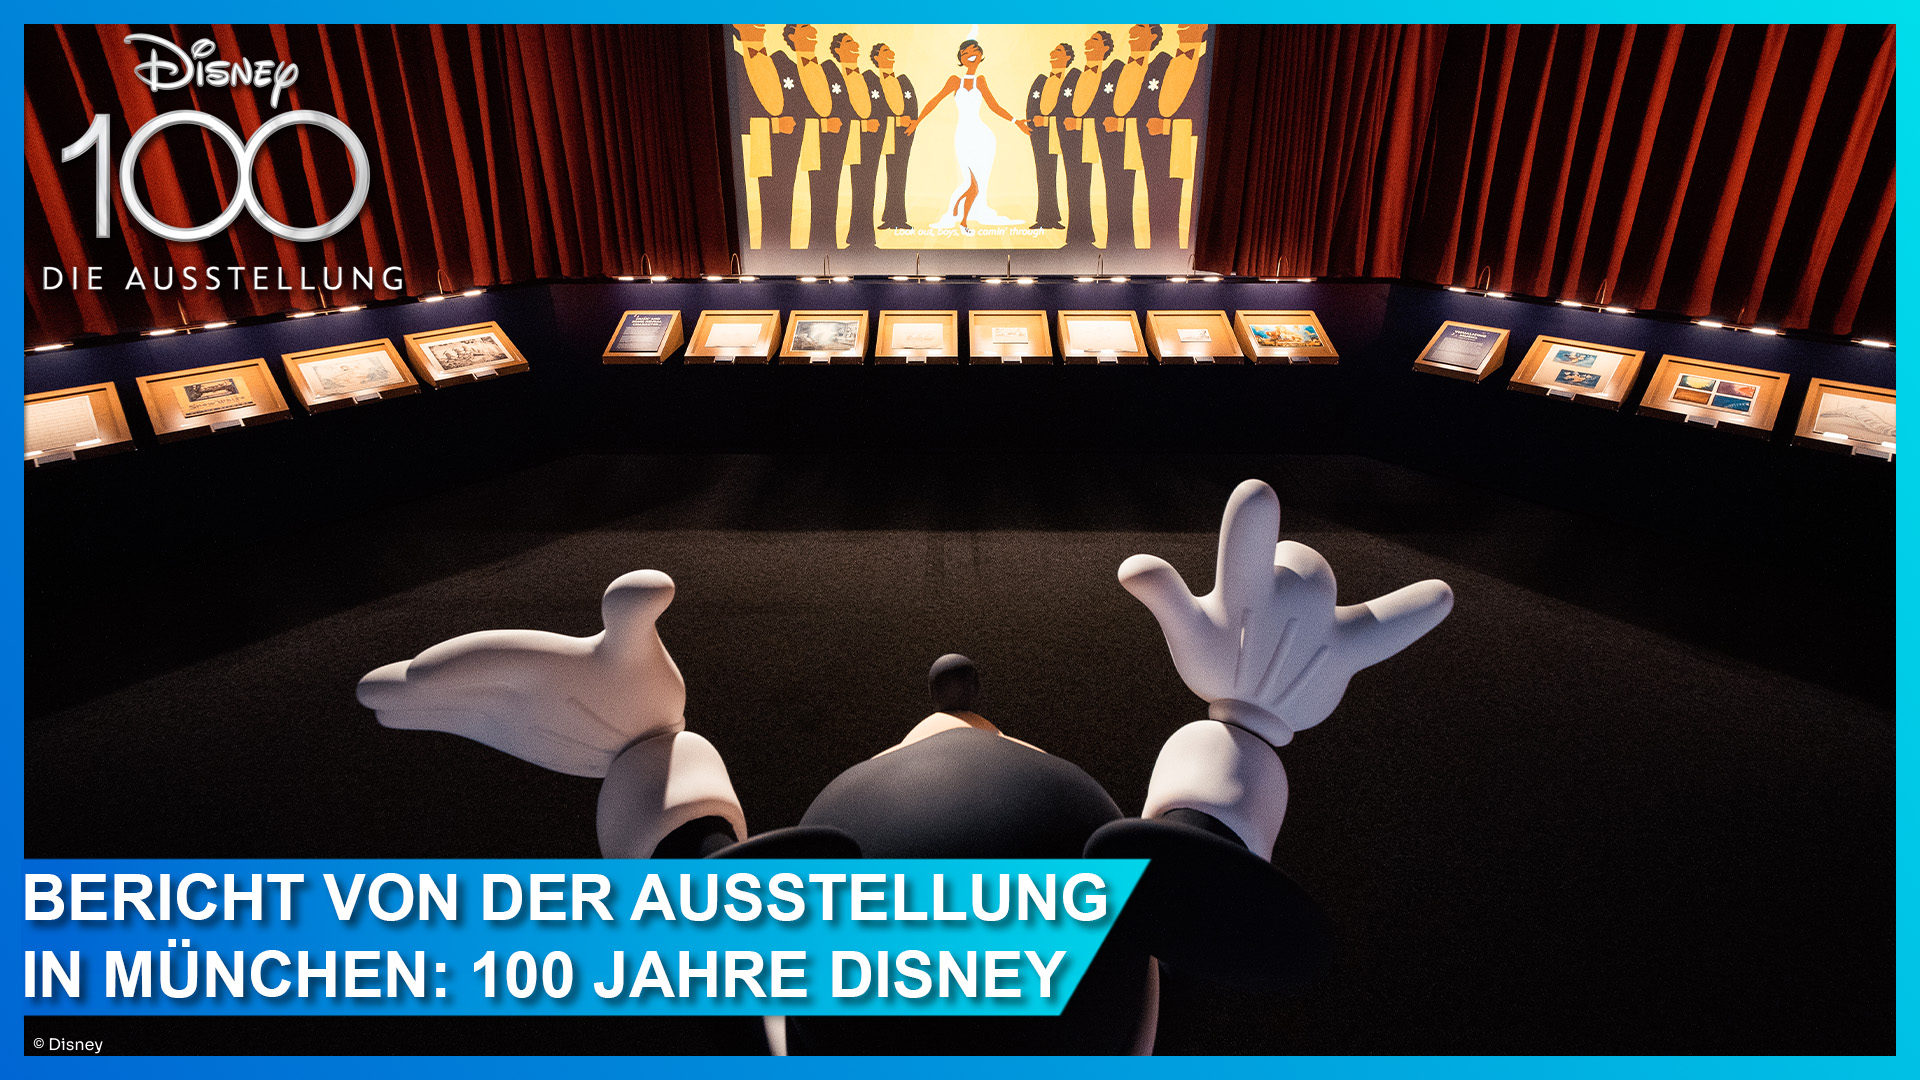 Disney100: Die Ausstellung feiert 100 Jahre Disney in der kleinen Olympiahalle in München - Bericht und Tickets